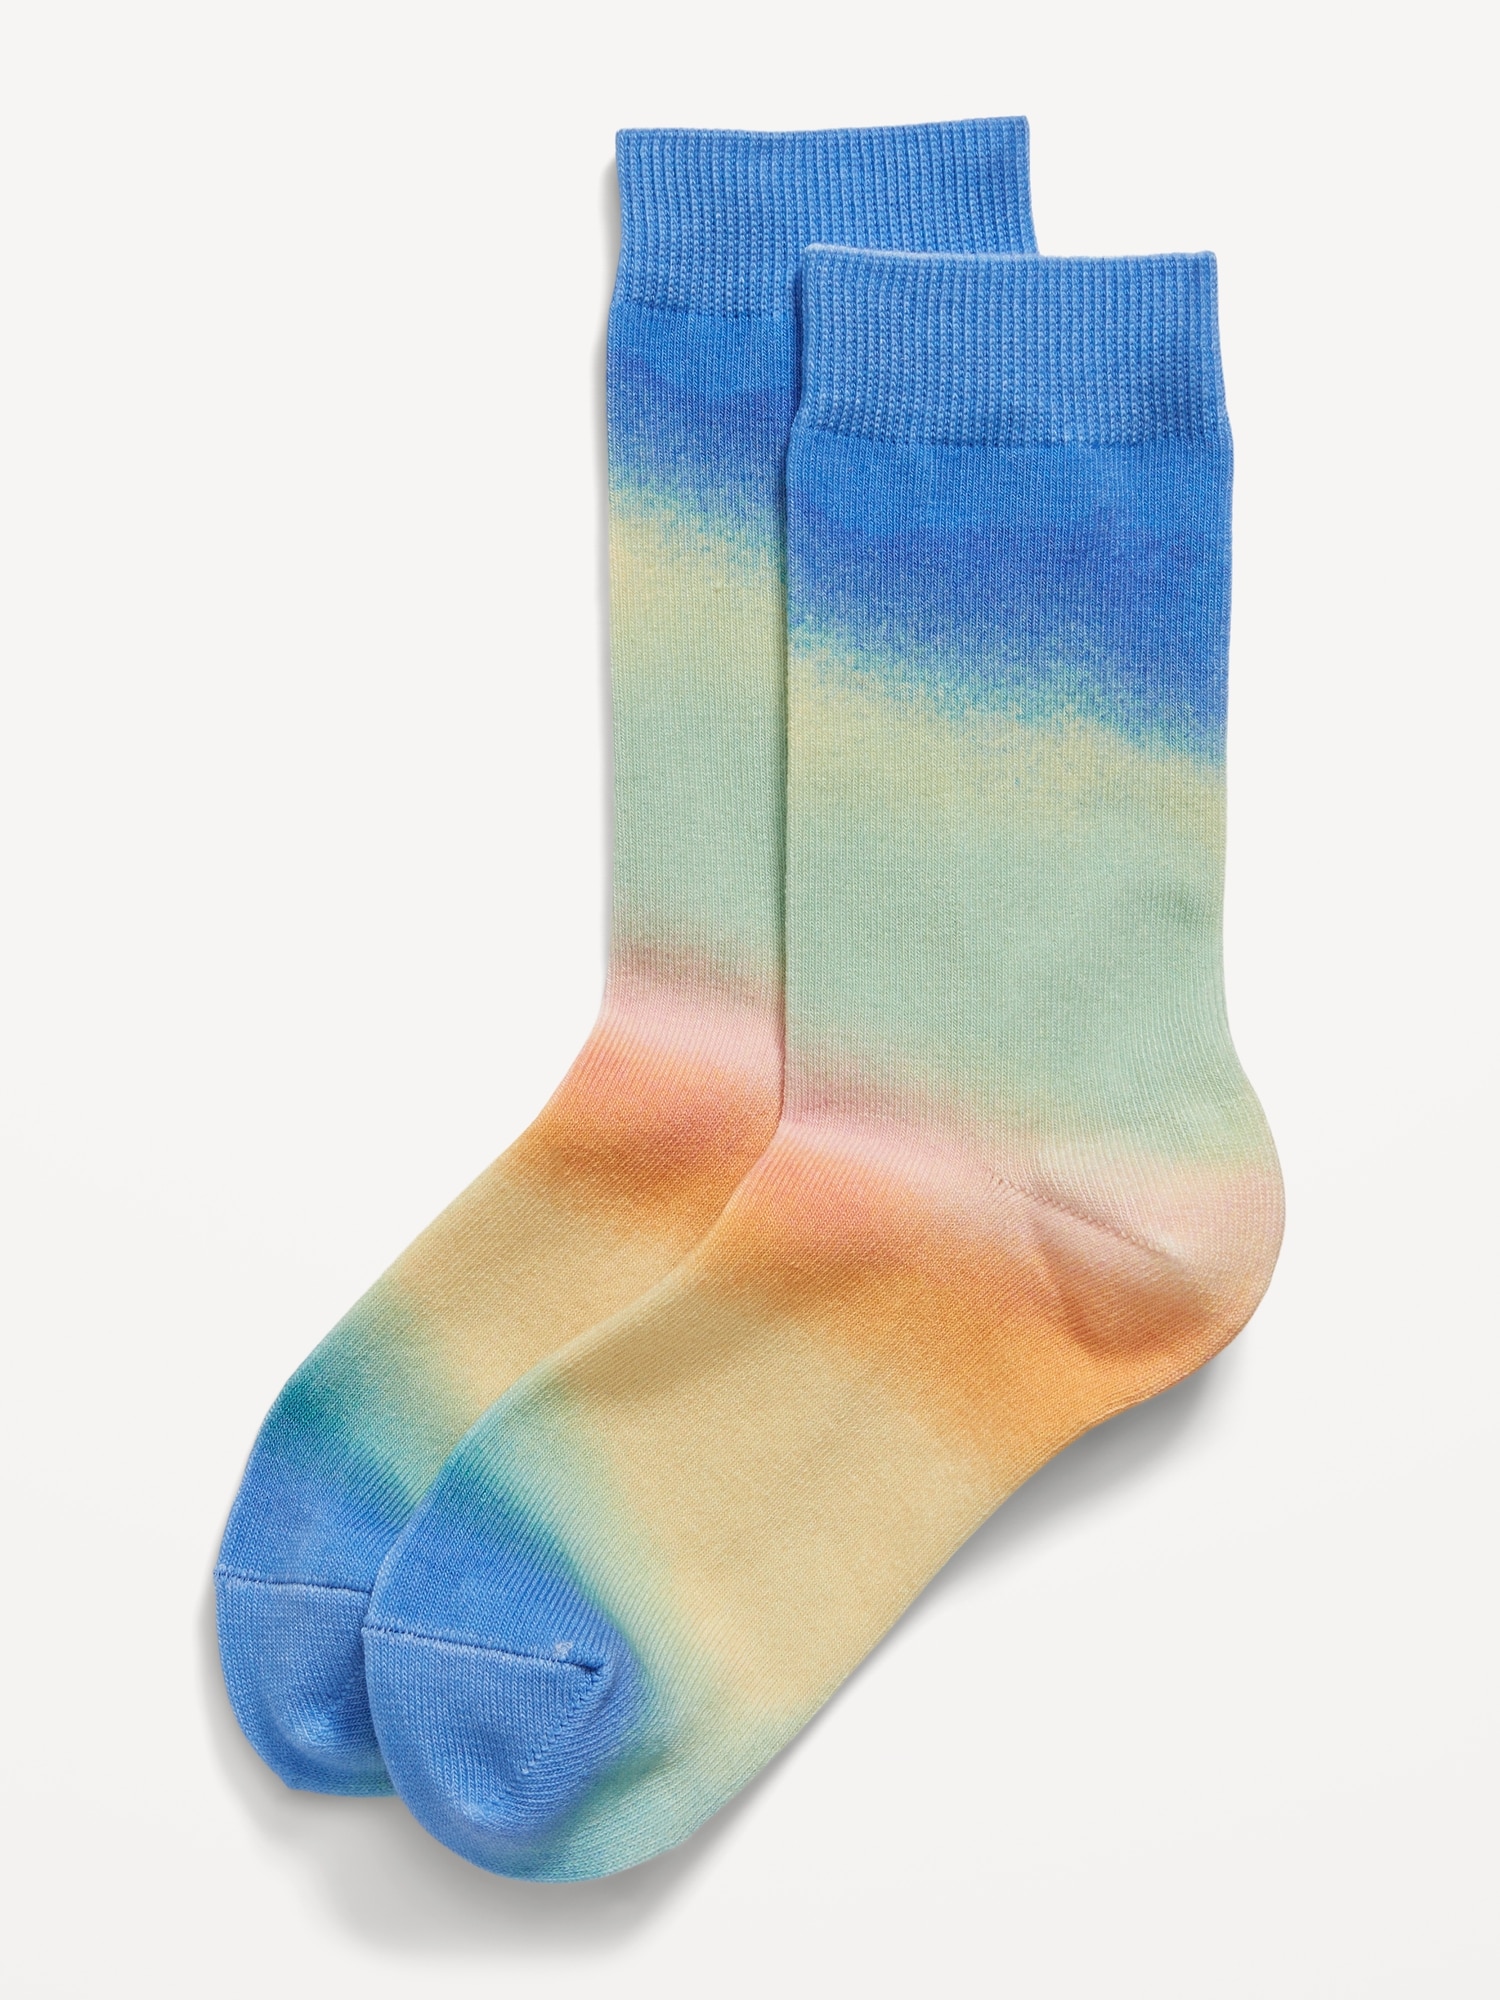 Gender-Neutral Crew Socks for Kids Hot Deal